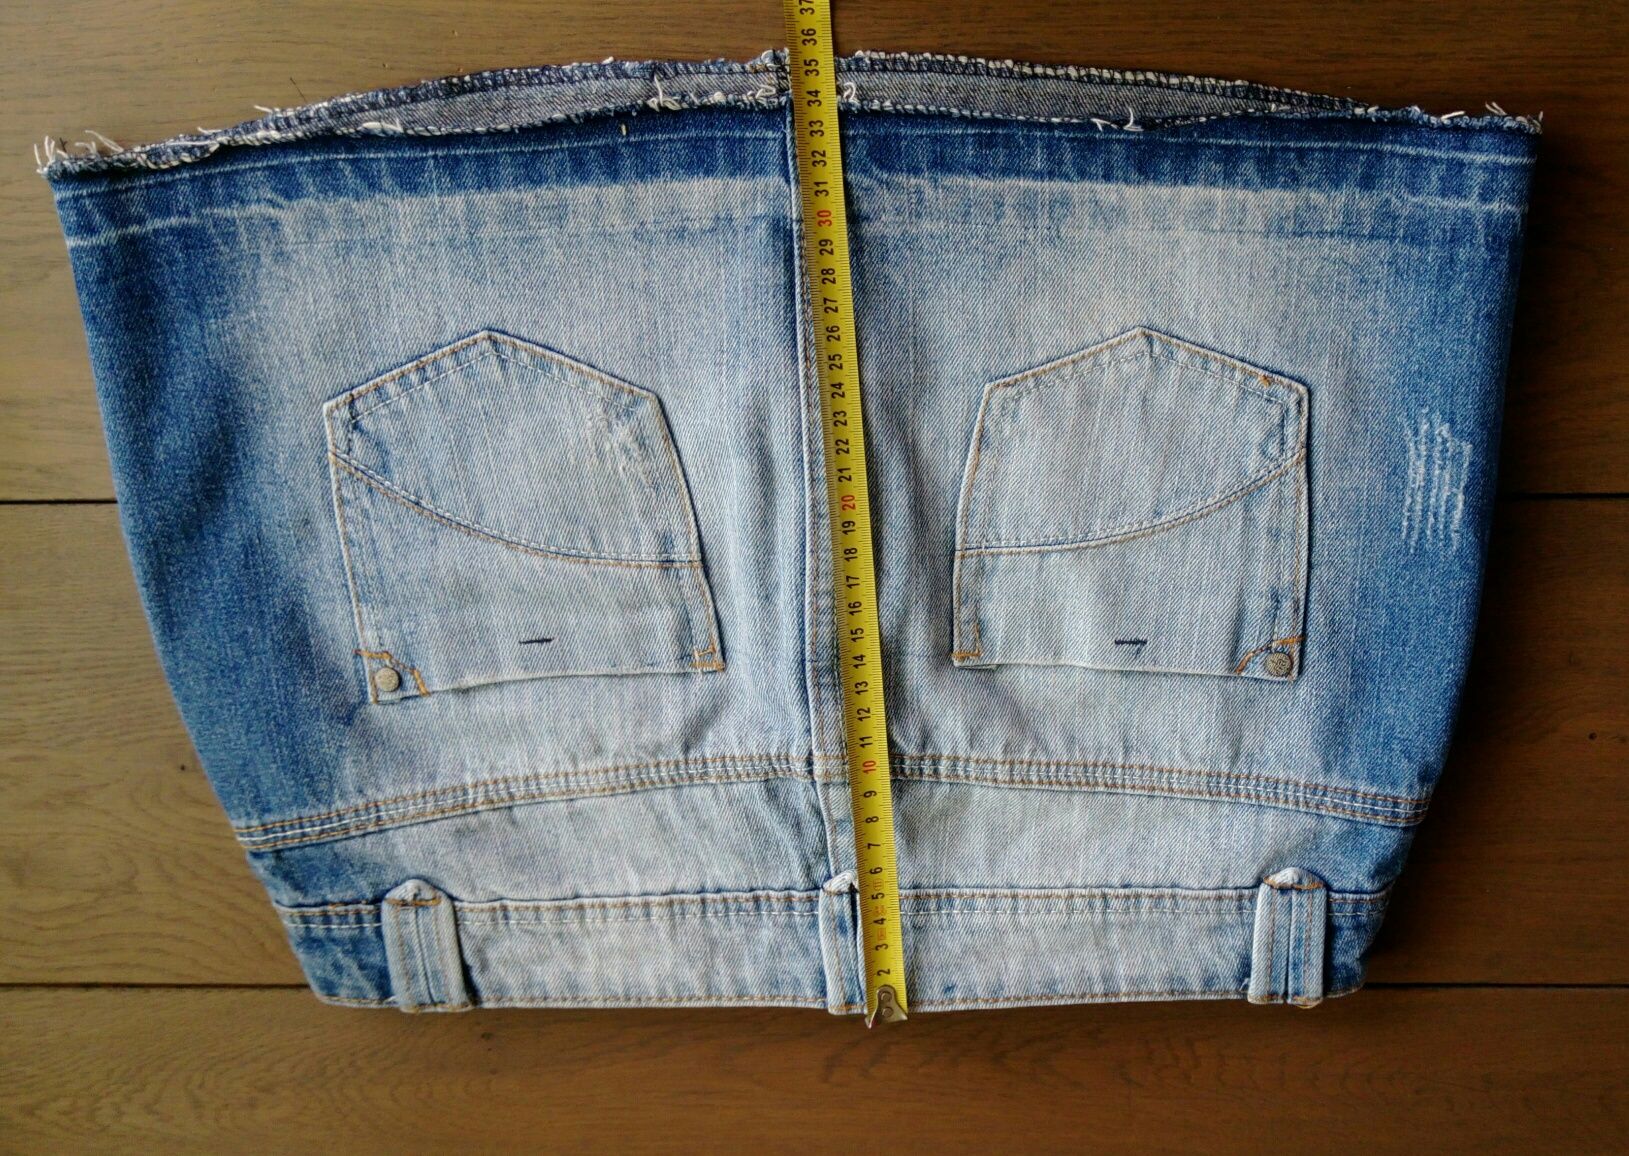 Krótka spódnica jeansowa damska mini r.40/L